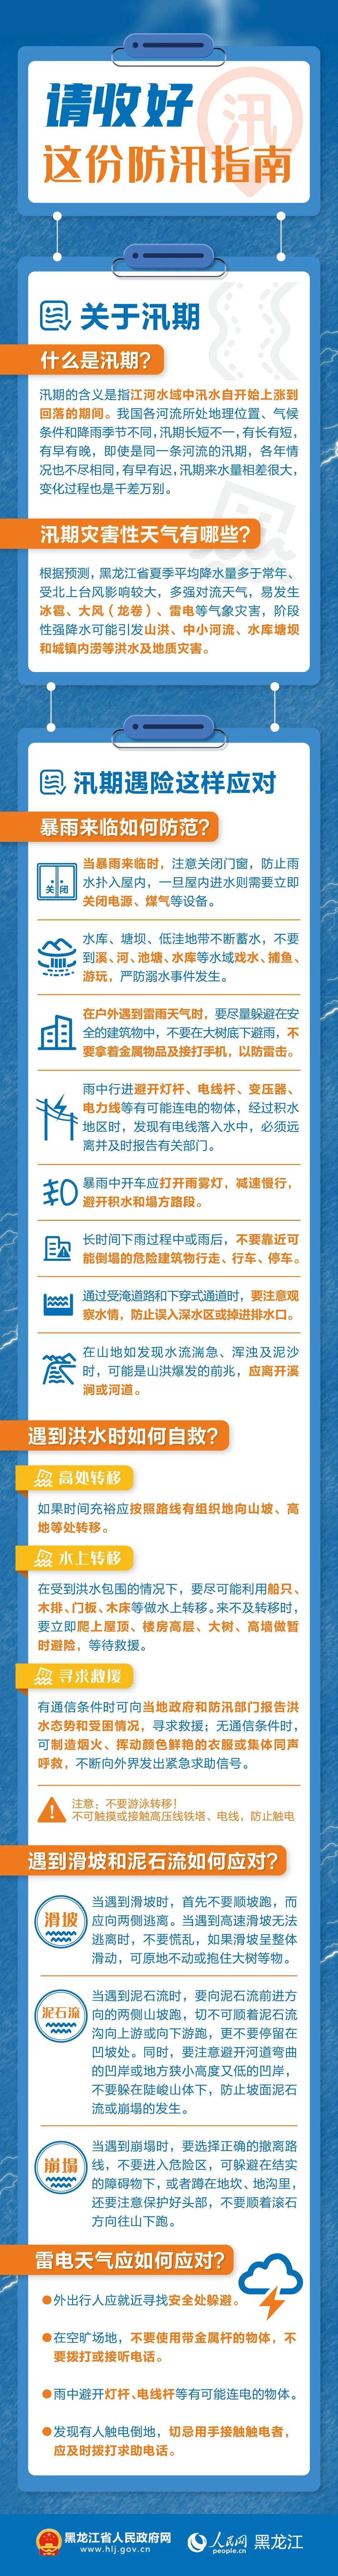 黑龙江省发布山洪灾害黄色预警